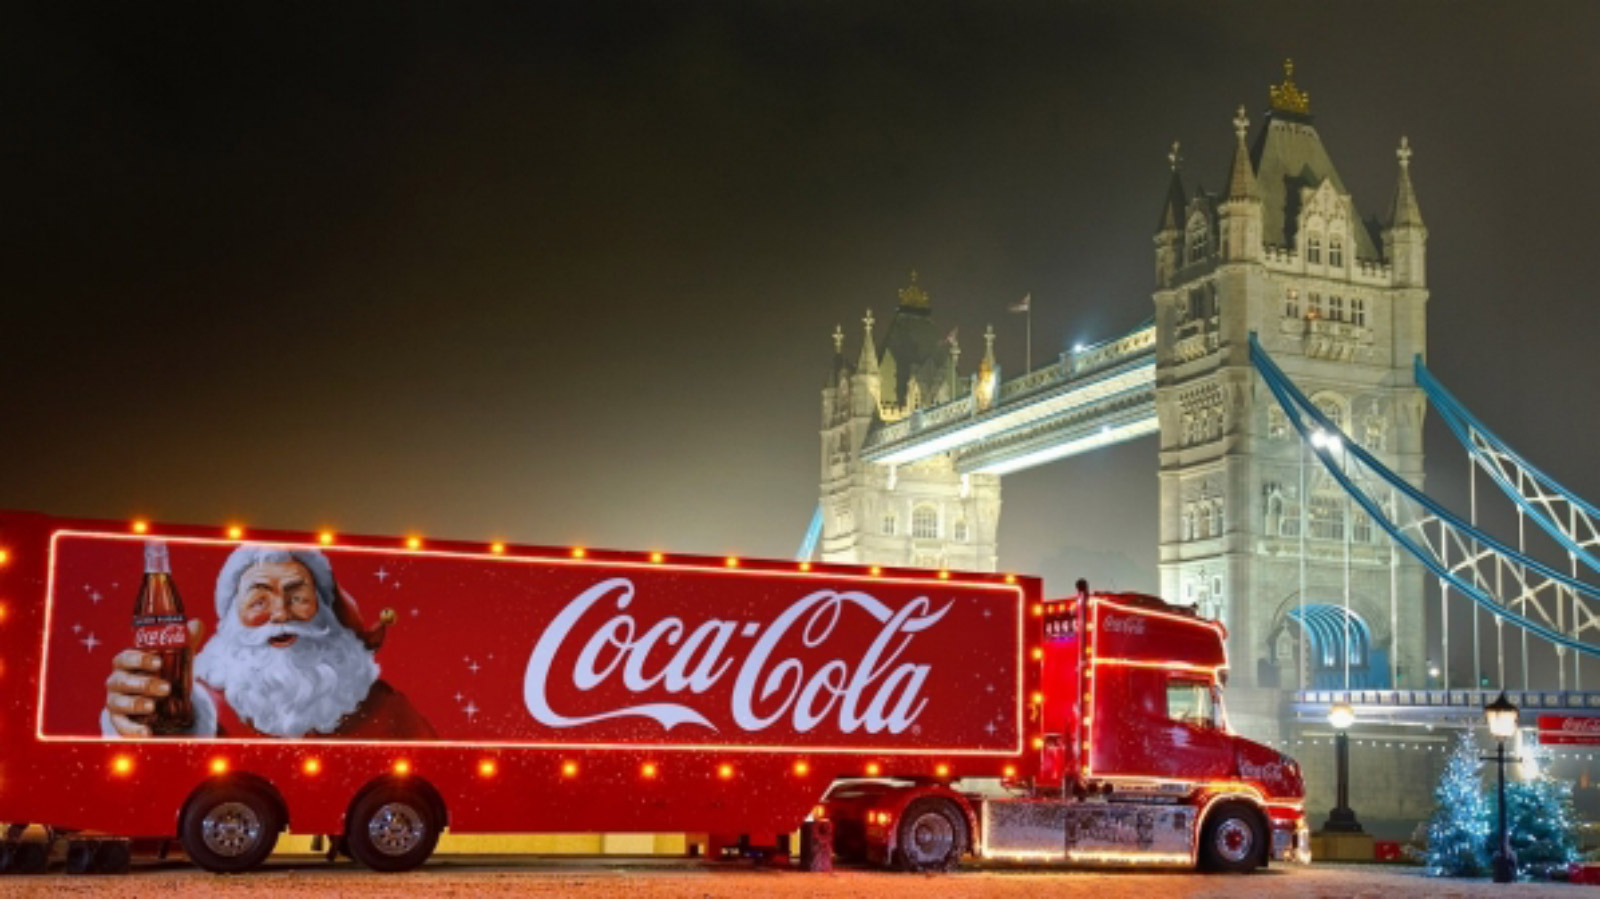 Ciężarówka COCA-COLI ruszyła - święta w reklamie oficjalnie rozpoczęte święta mediarun coca cola ciezarowka 2019